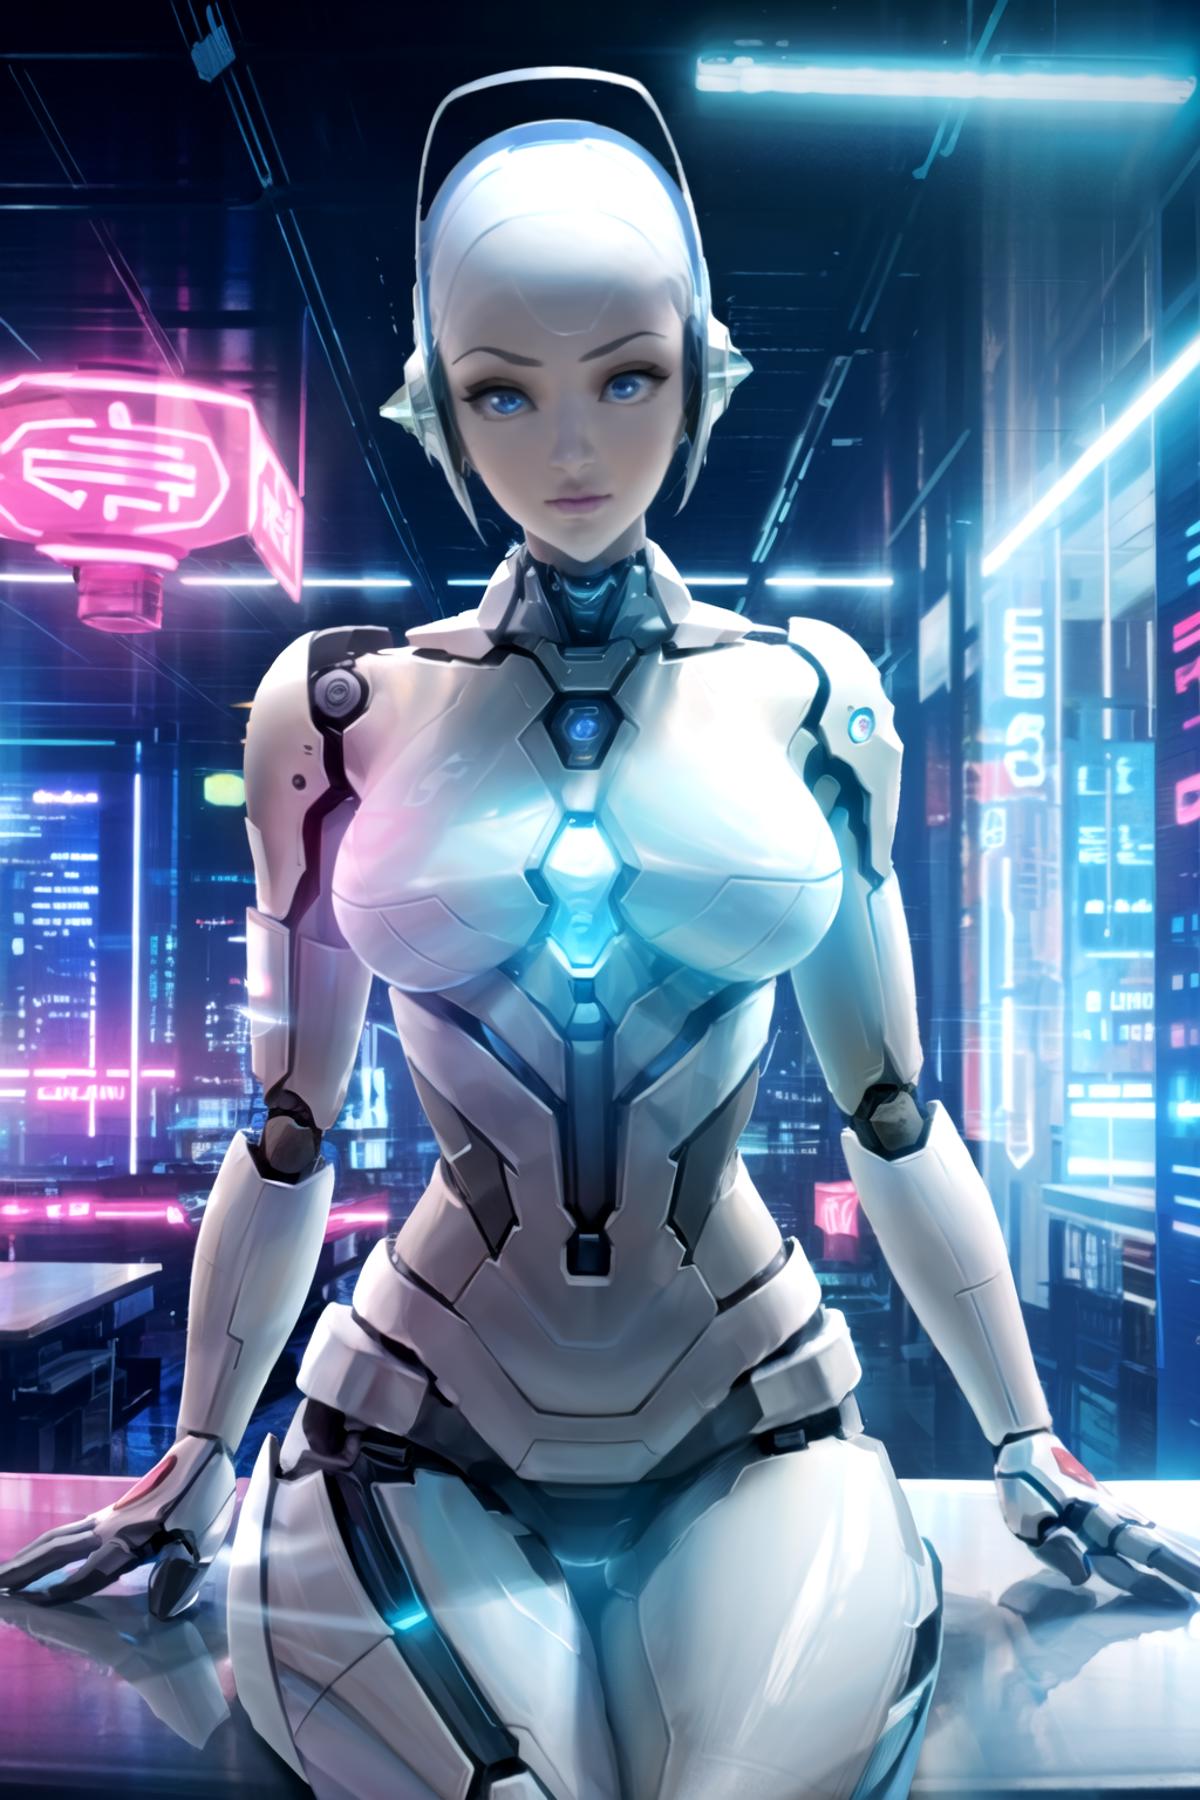 AI model image by WhiteZ